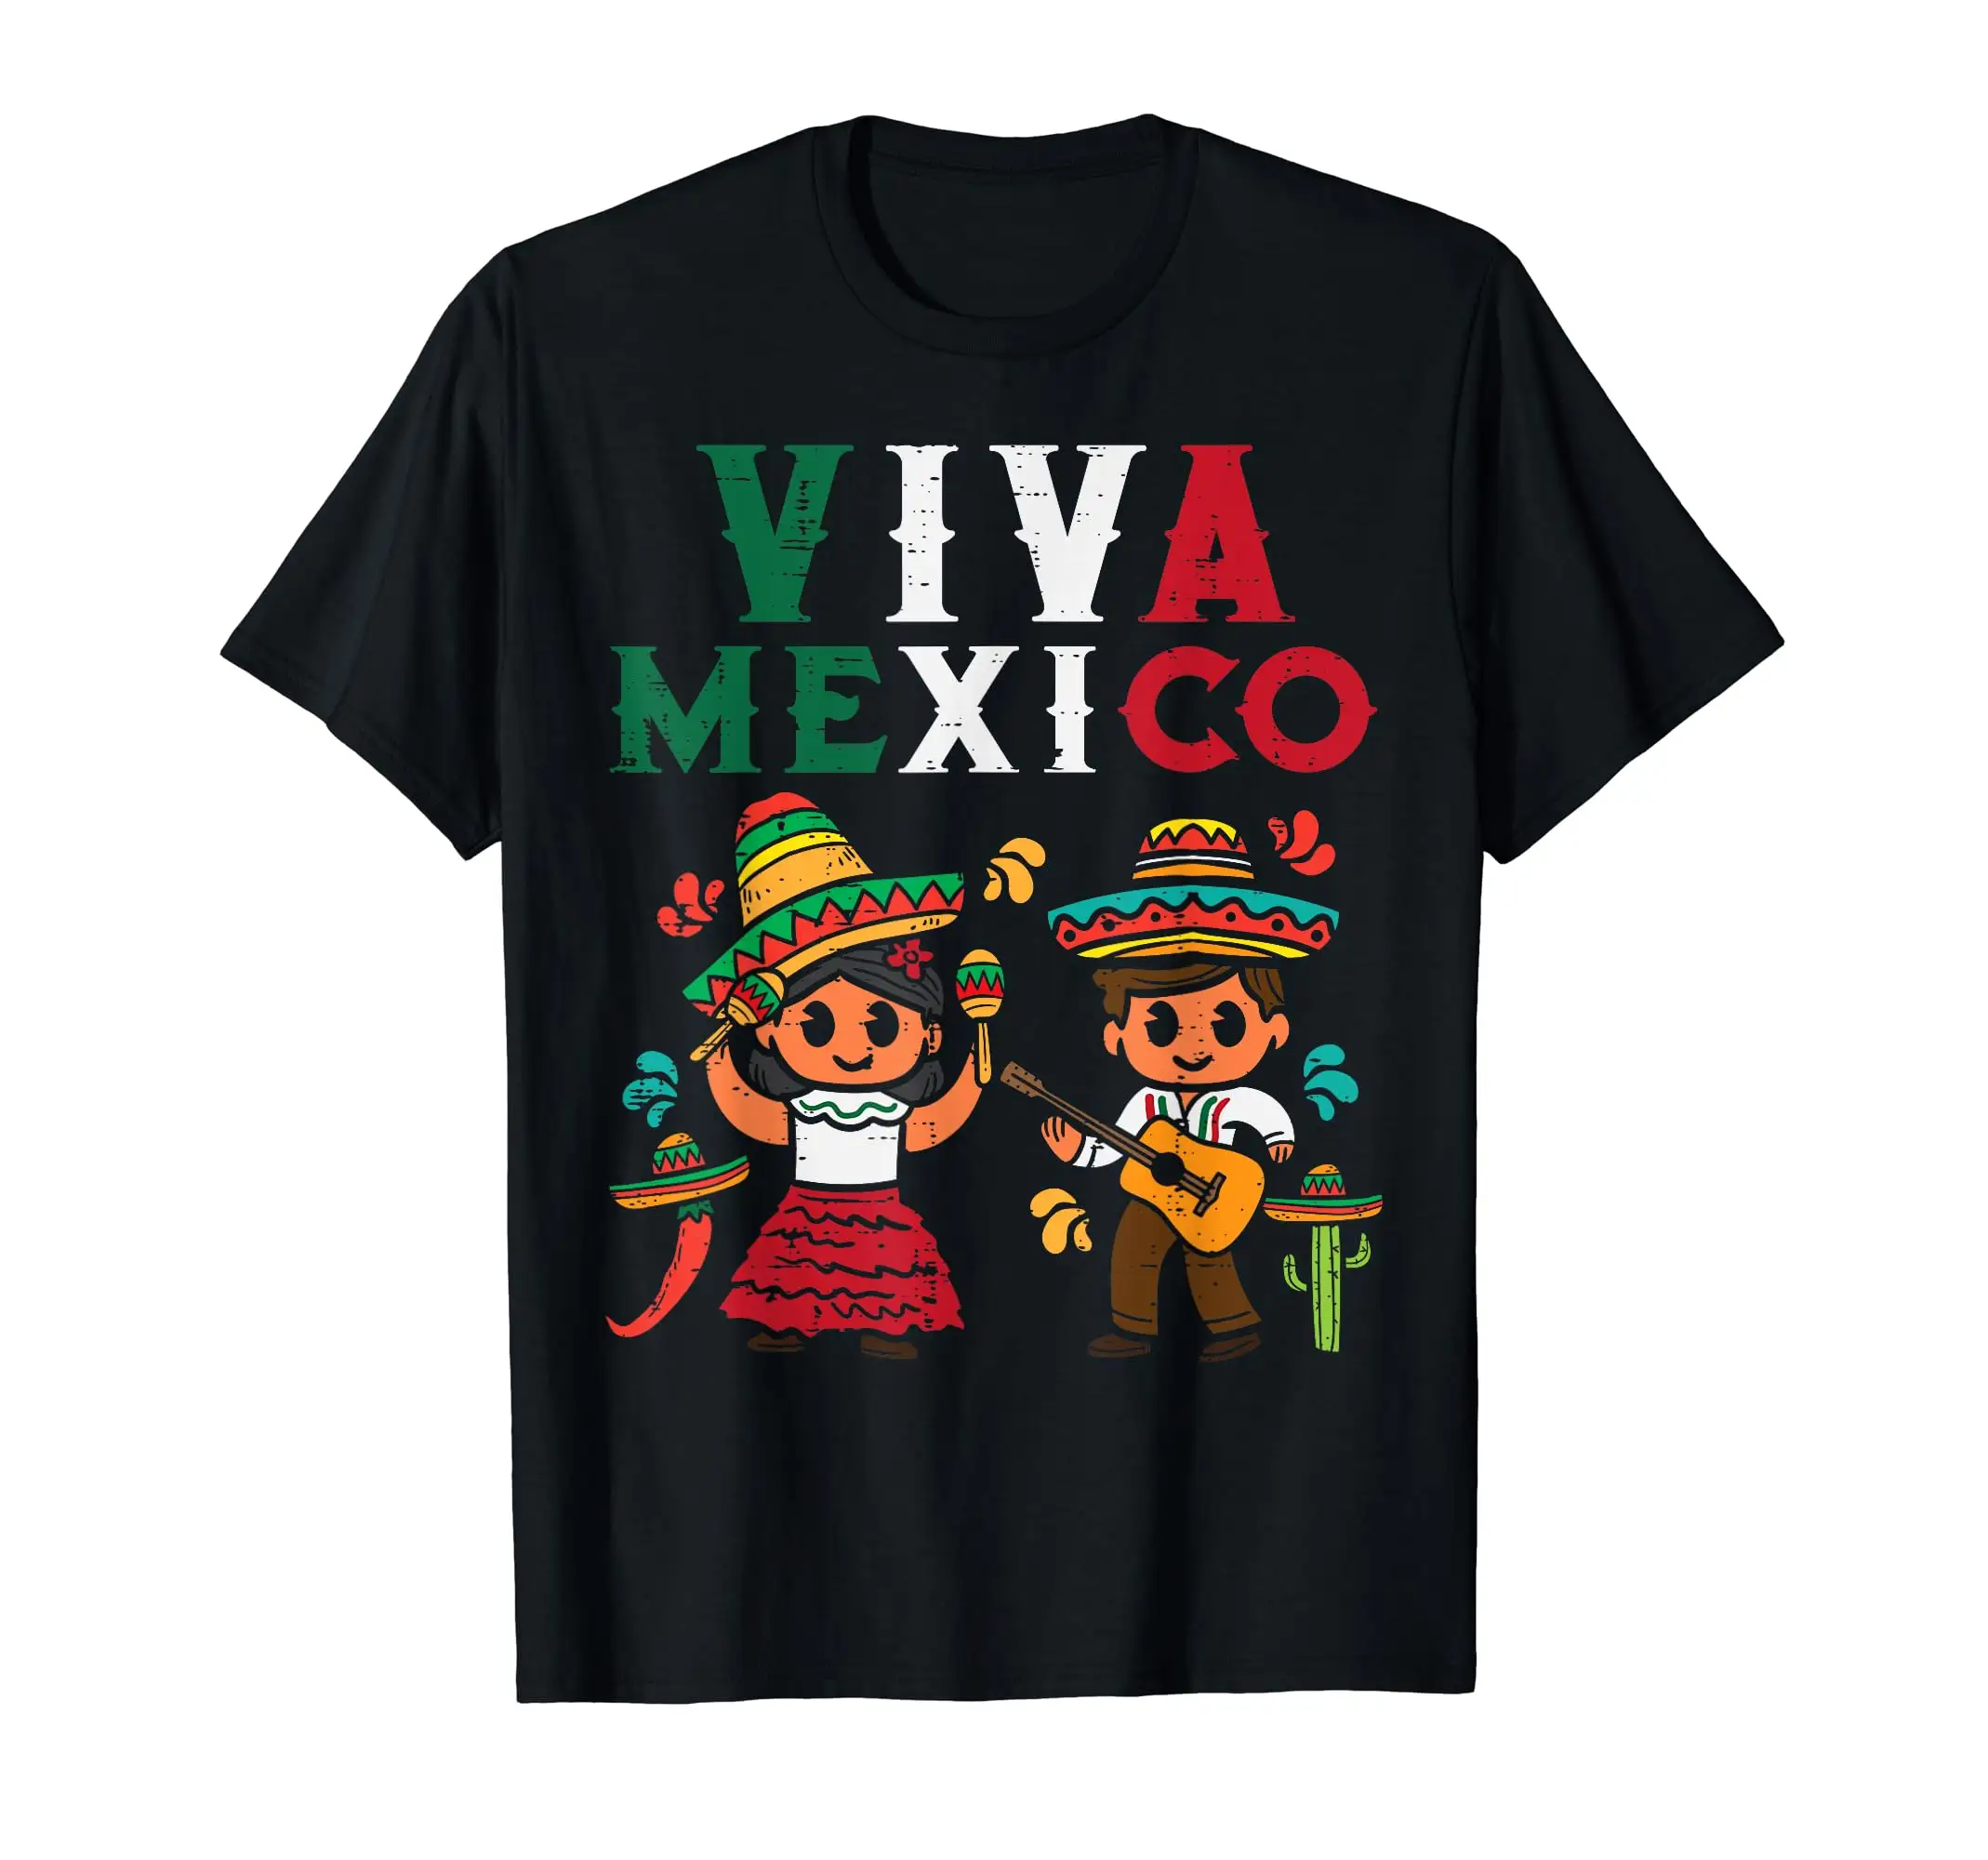 하이 퀄리티 도매 인쇄 오넥 Cinco de Mayo 비바 멕시코 국기 멕시코 프라이드 선물 남자의 일 100% 면 의류 티셔츠